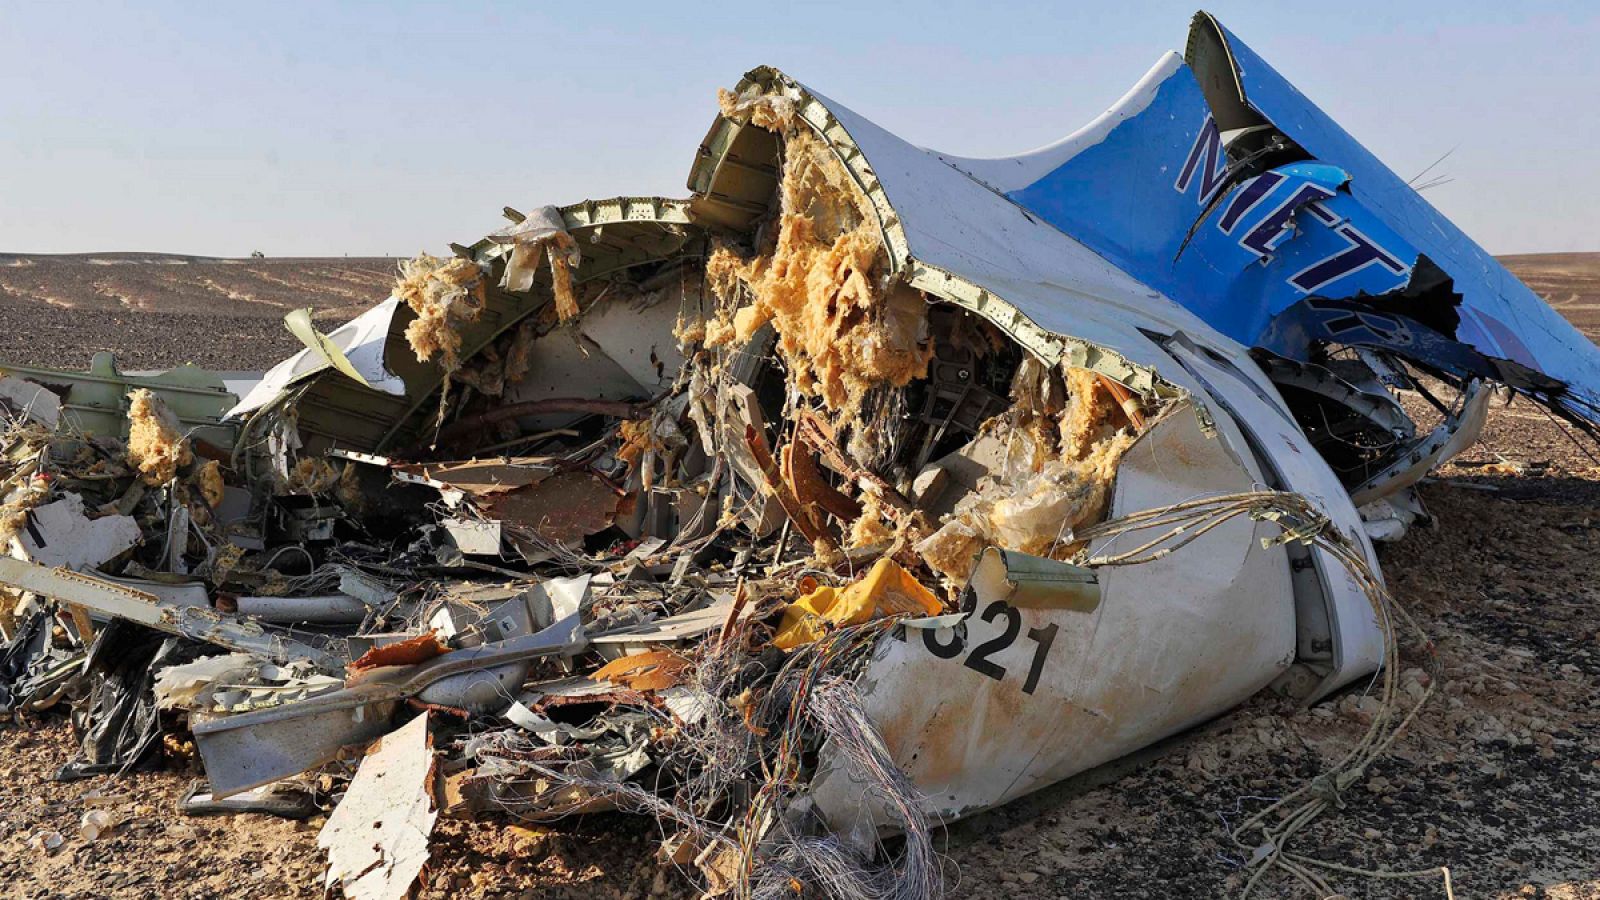 Sección de cola del Airbus 321 estrellado en la península de Sinaí.